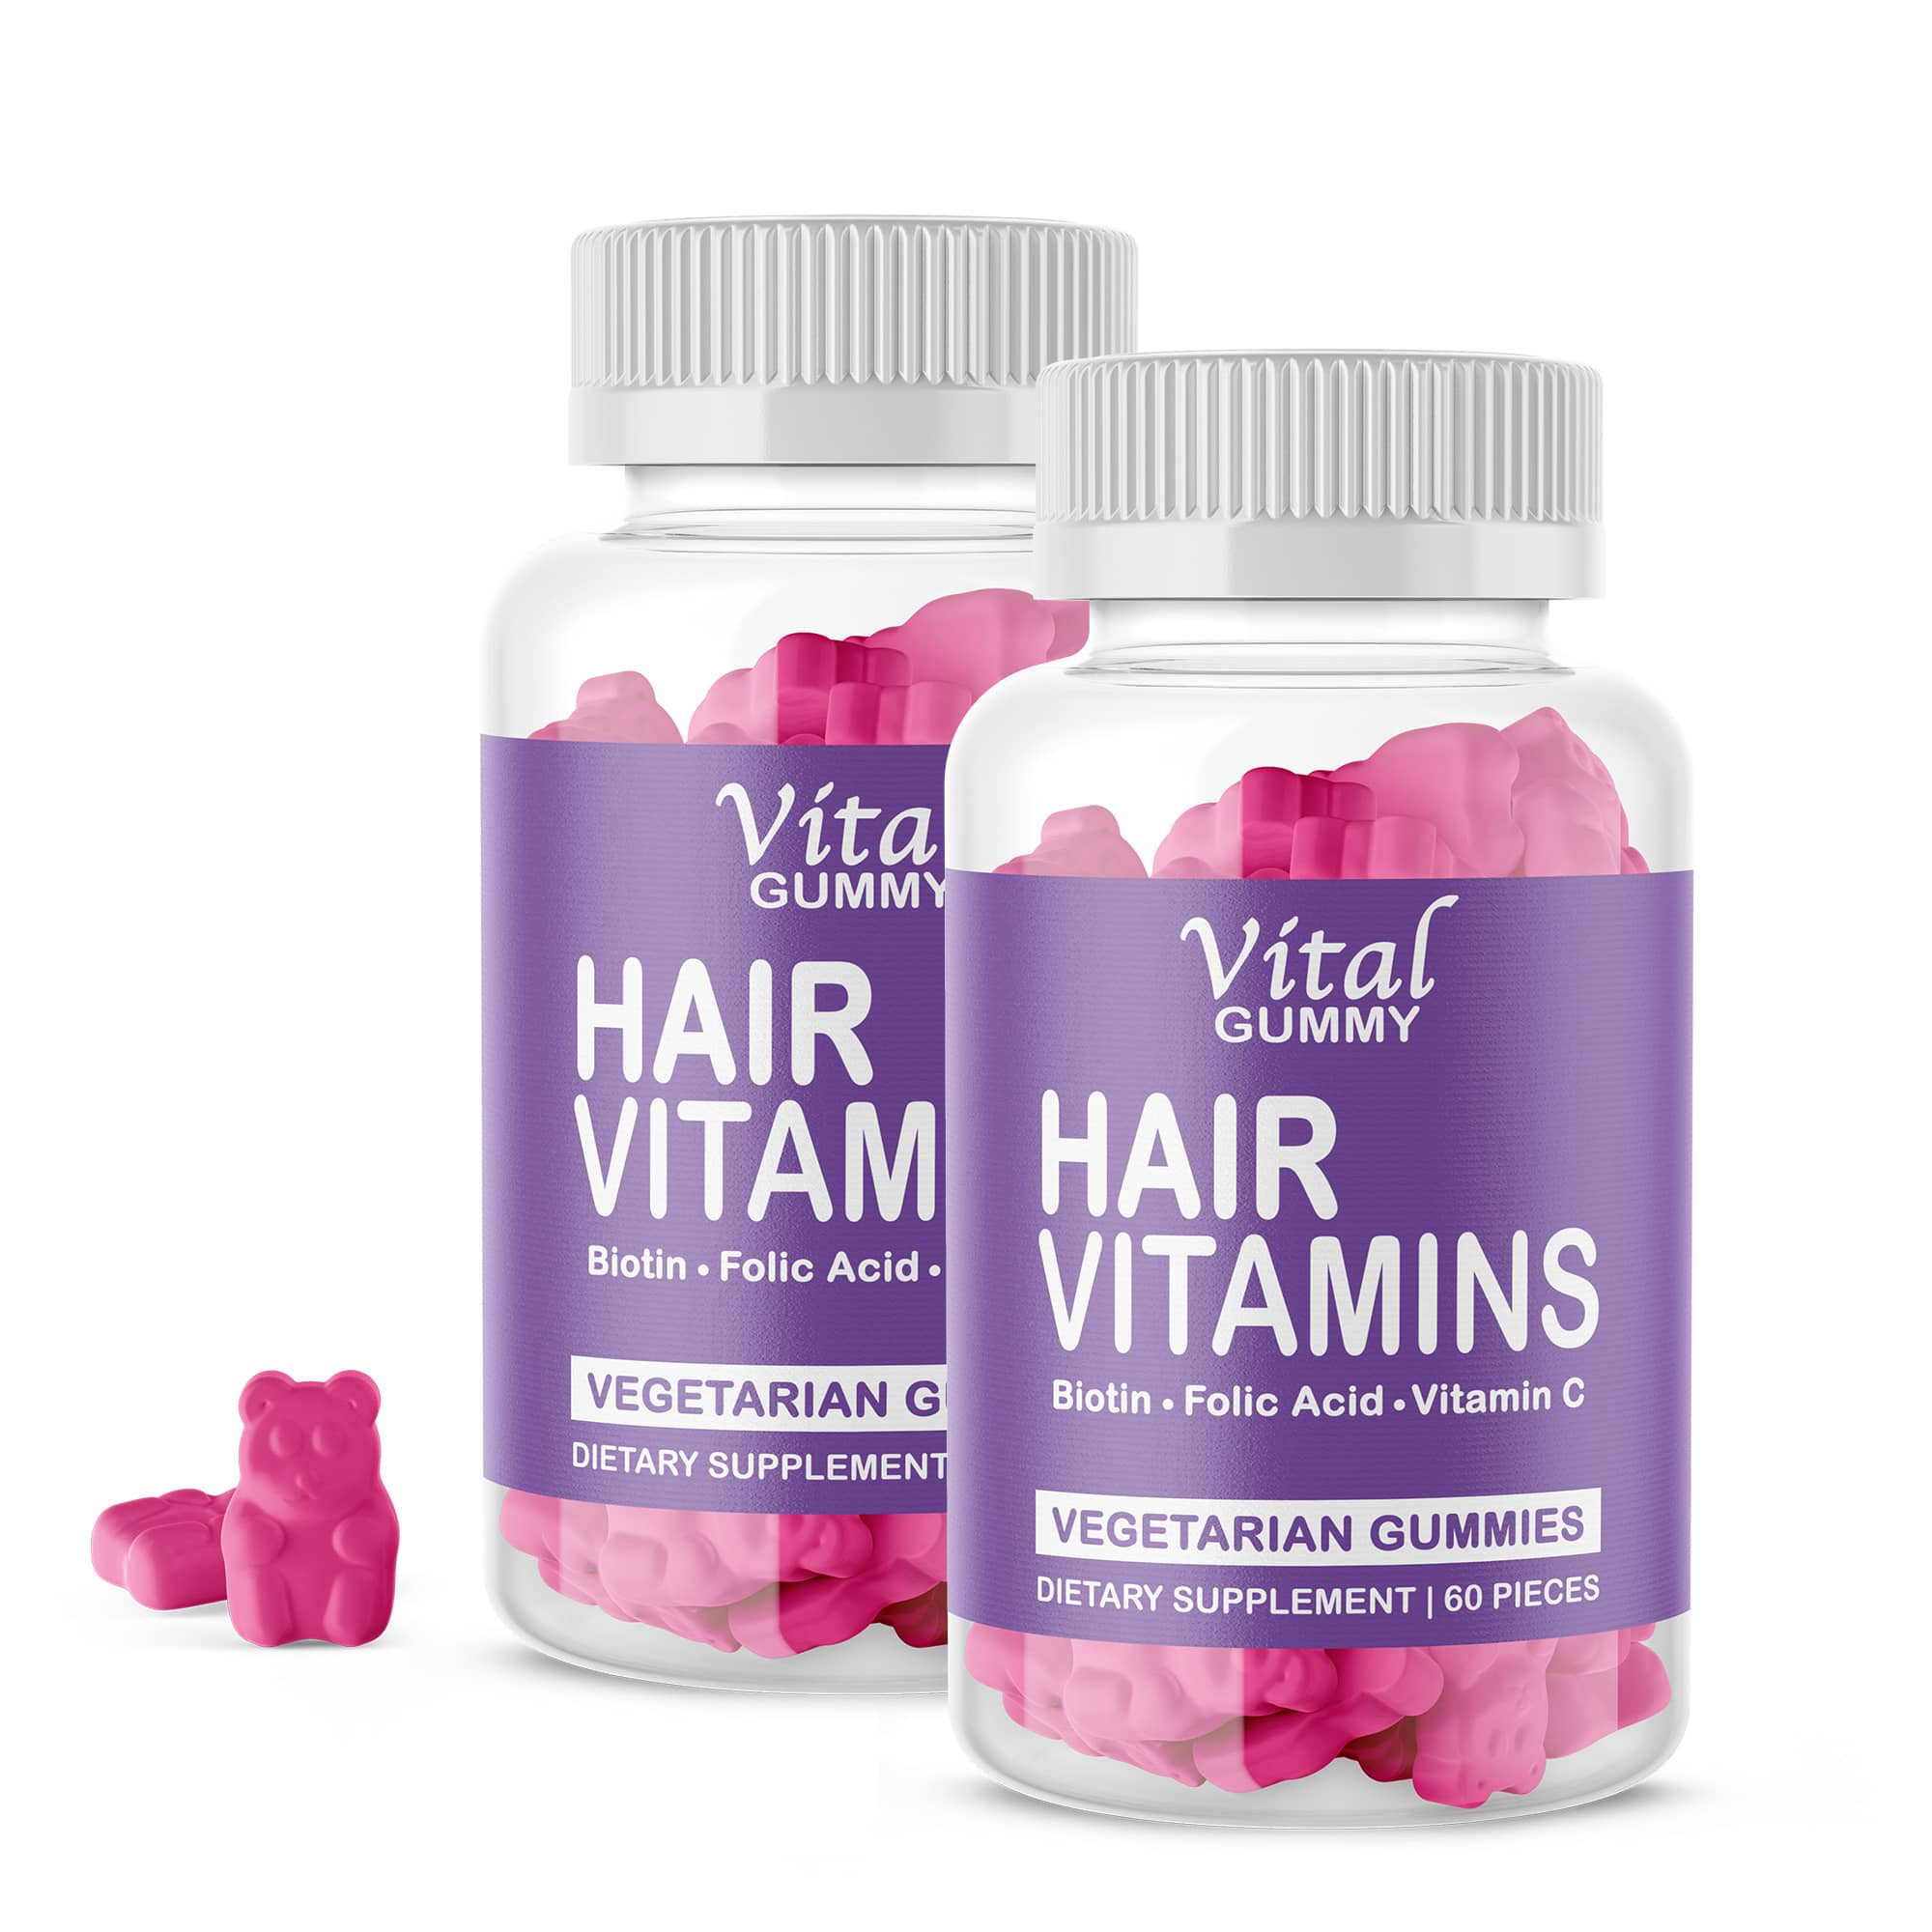 vital gummy hair vitamins gummies 2 months